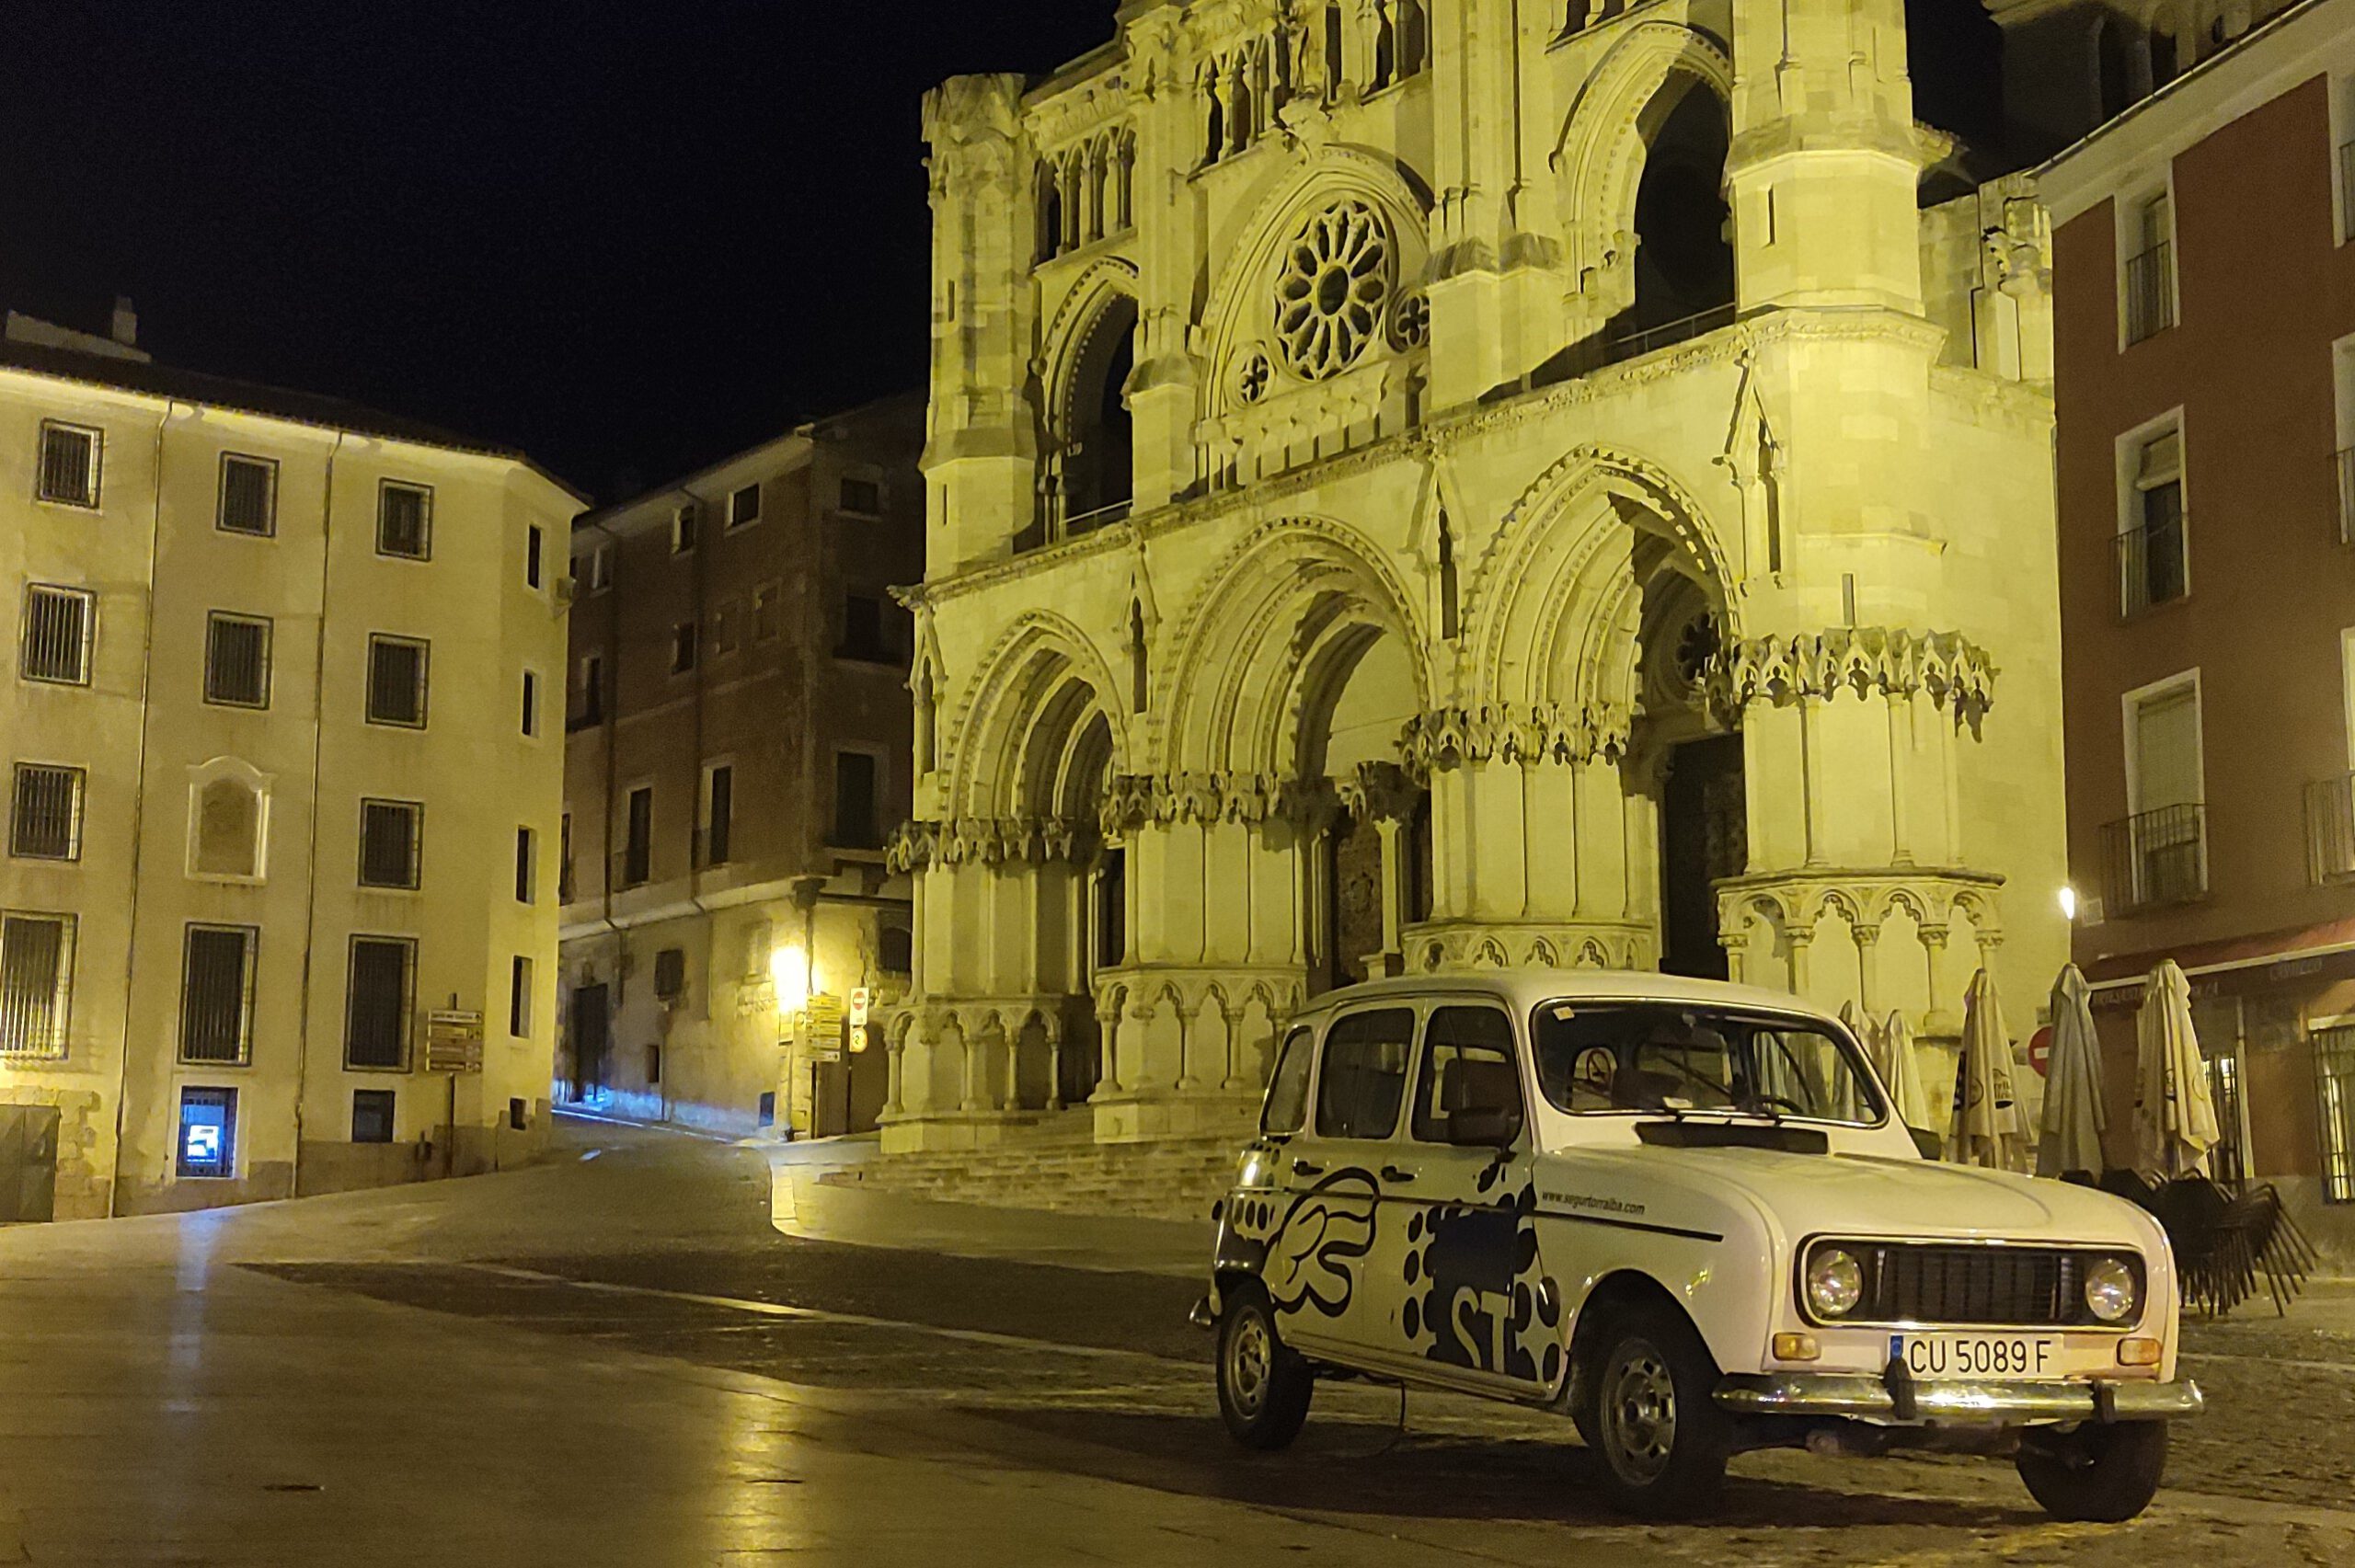 El coche 4L de Segur Torralba parado en la plaza mayor de Cuenca de noche.